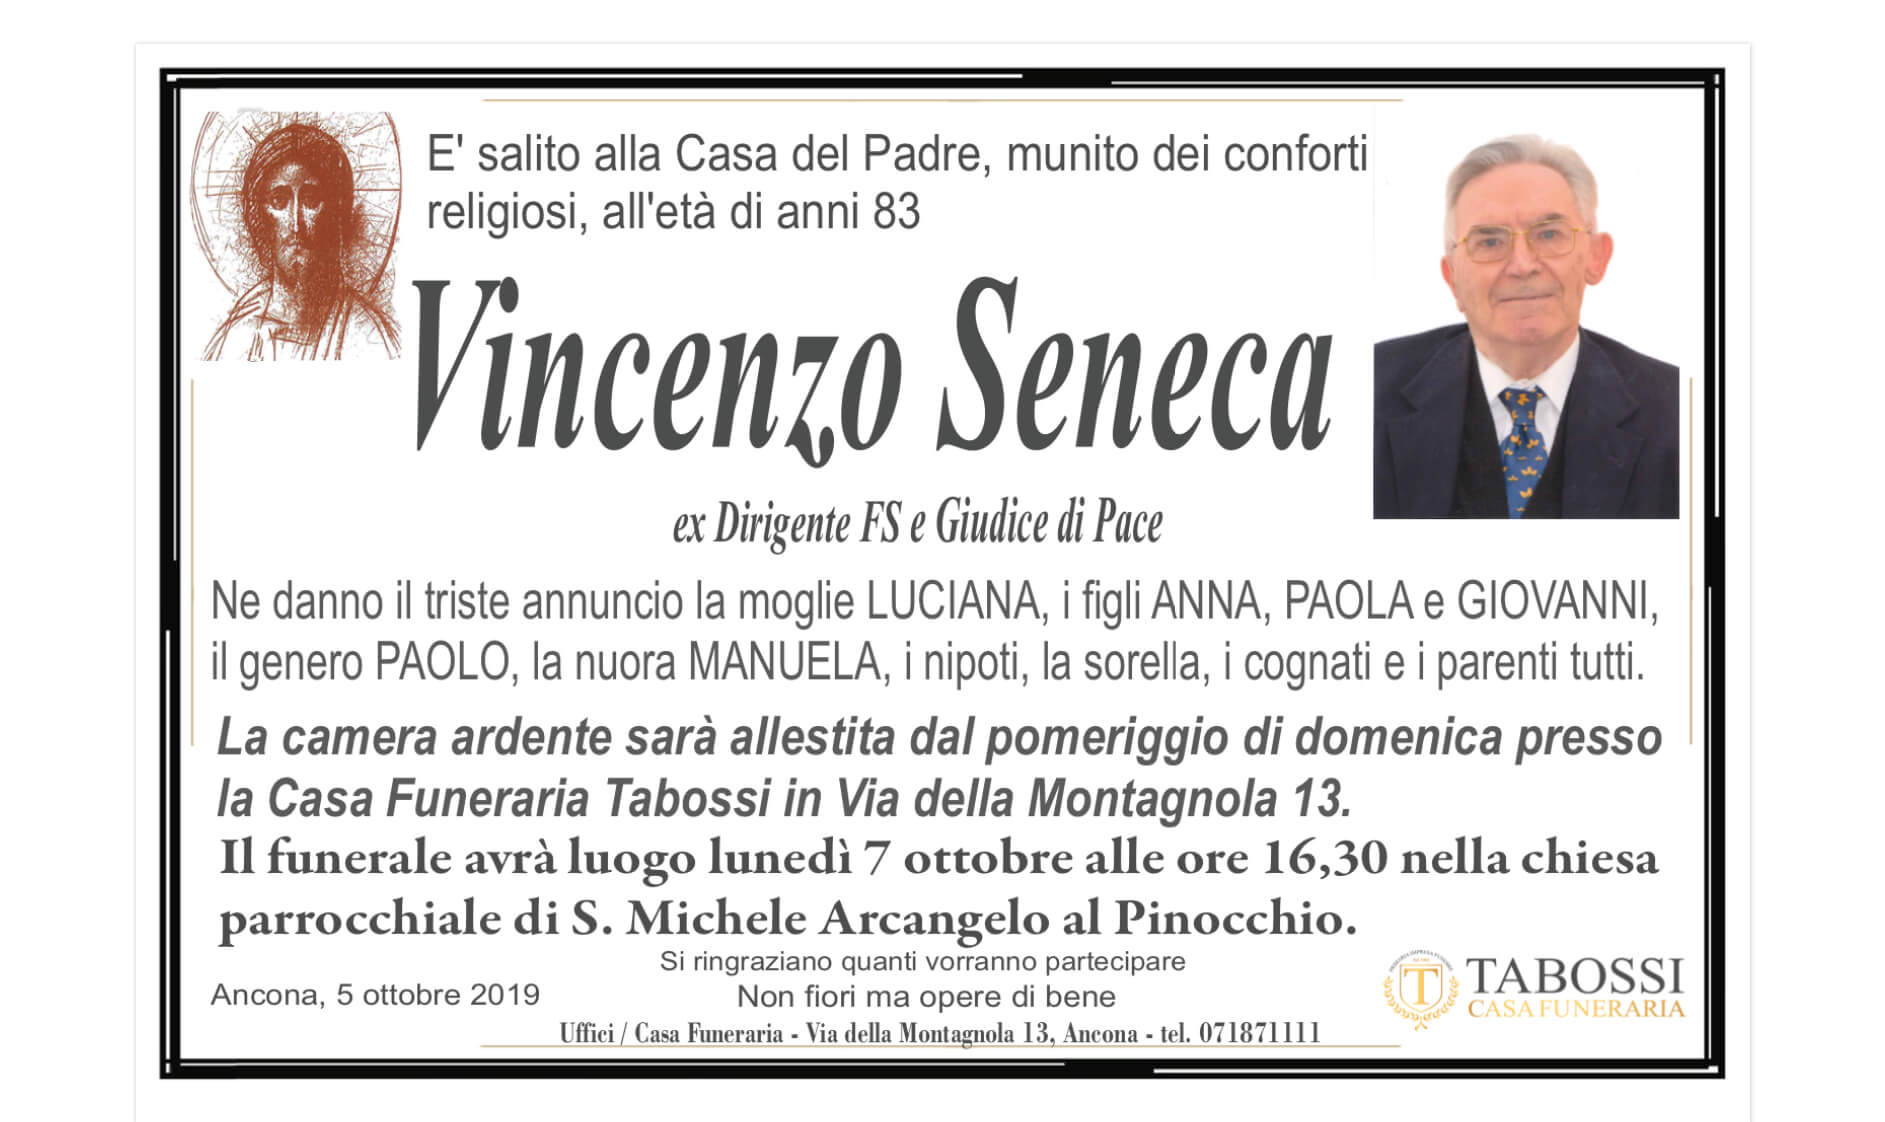 Vincenzo Seneca